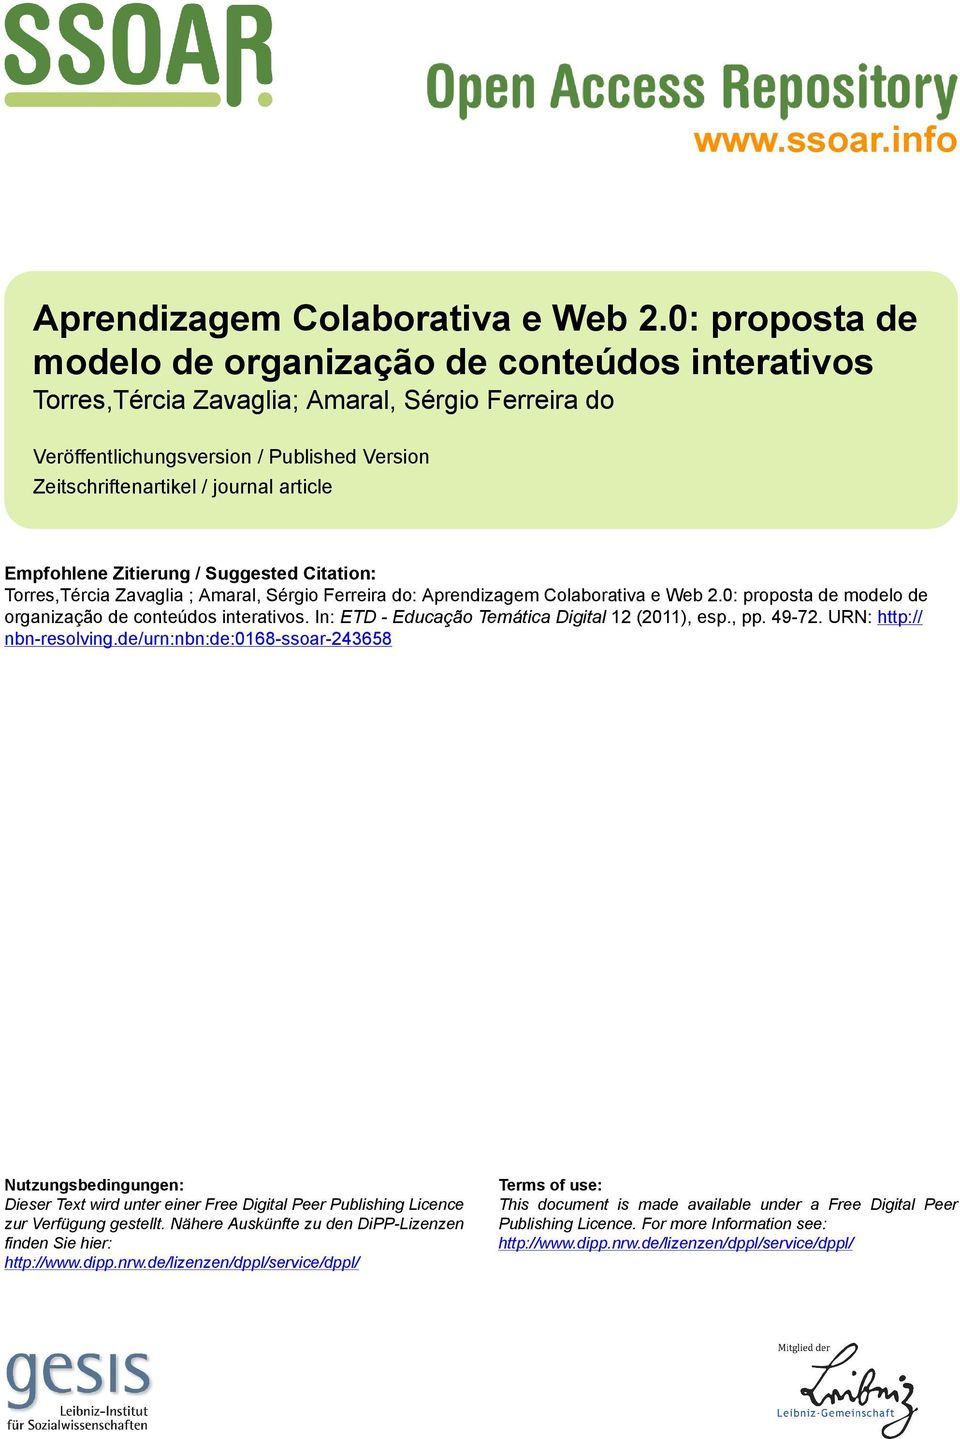 Empfohlene Zitierung / Suggested Citation: Torres,Tércia Zavaglia ; Amaral, Sérgio Ferreira do: Aprendizagem Colaborativa e Web 2.0: proposta de modelo de organização de conteúdos interativos.